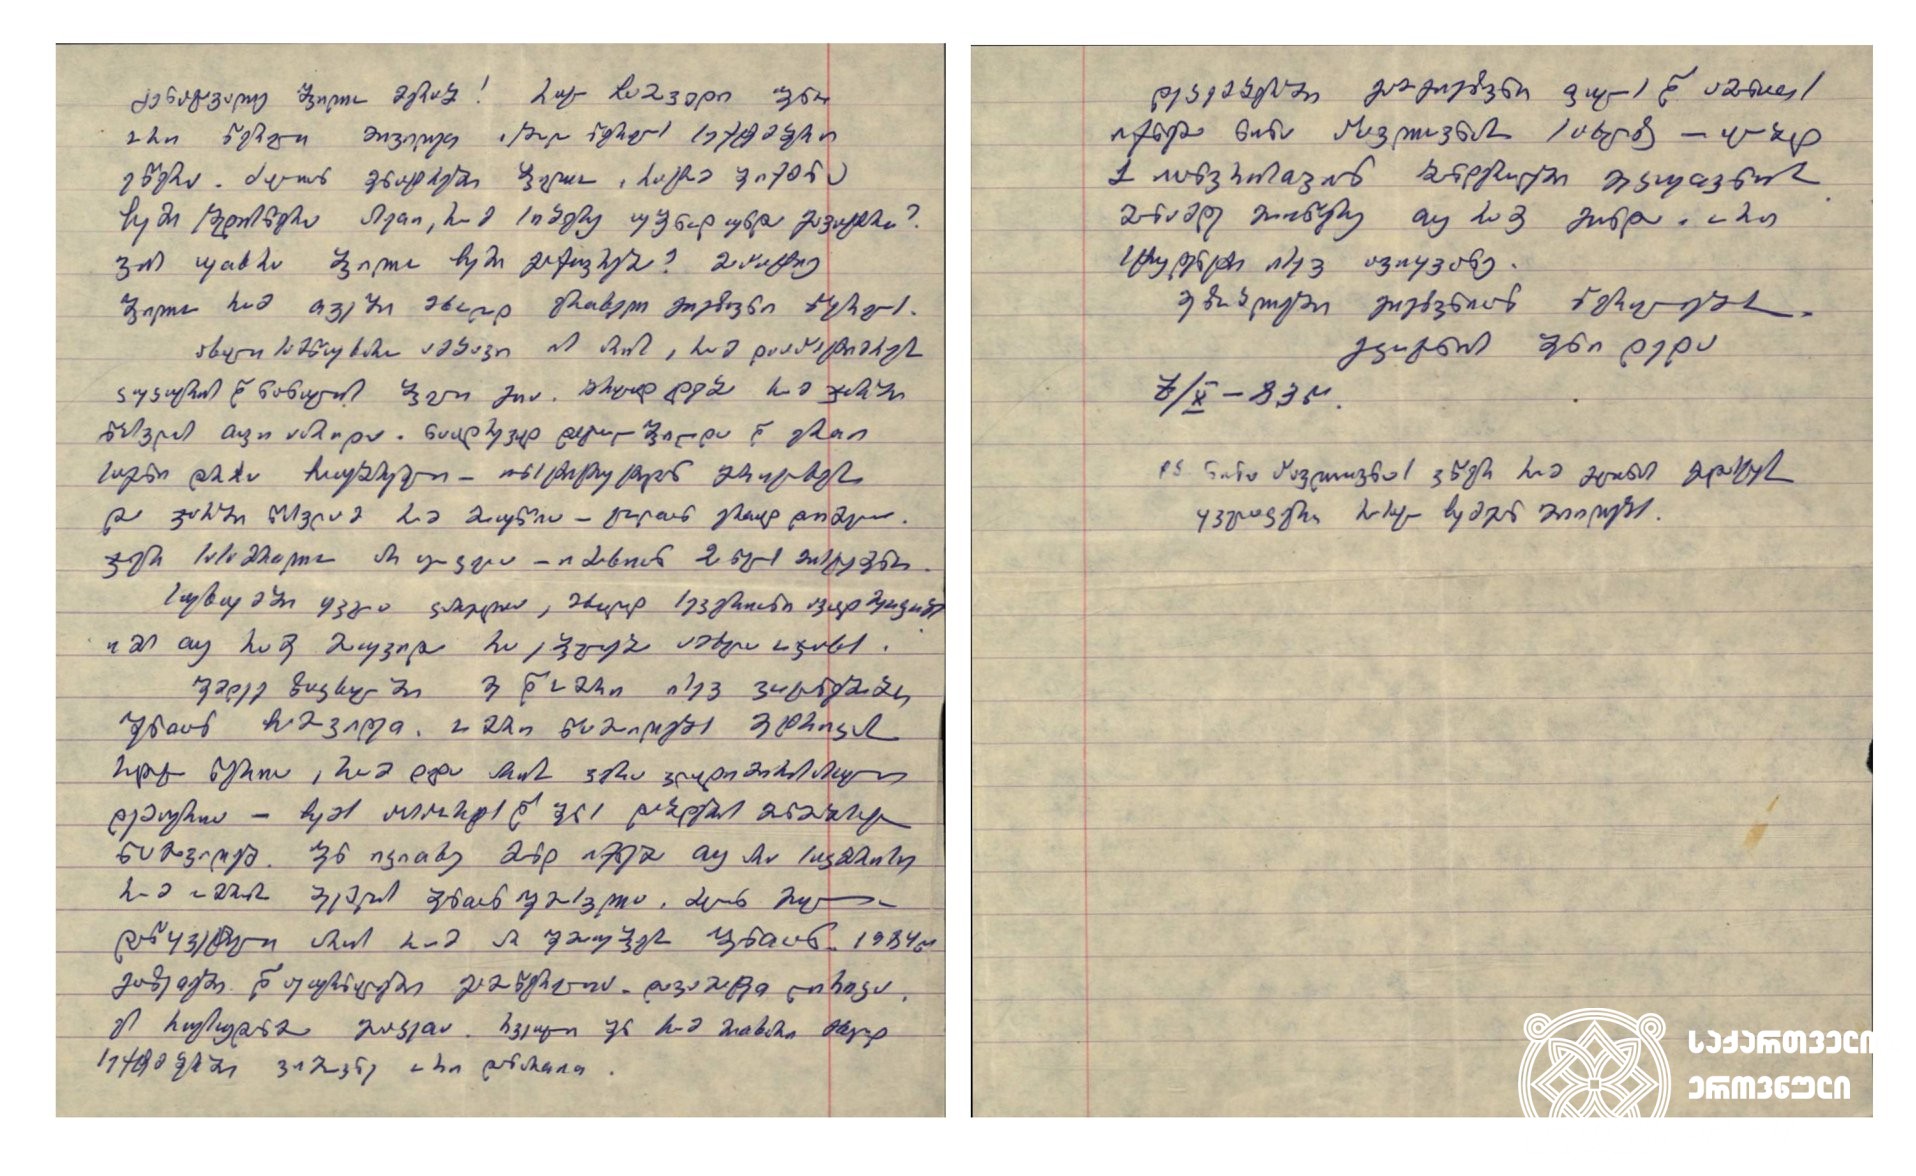 დედის, ოლღა დემურიას, წერილი გადასახლებაში მყოფ მერაბ კოსტავას. 1983 წლის 7 ოქტომბერი
<br>
A letter of Olgha Demuria, Merab Kostava's mother, sent to her son in exile. 7, October, 1983